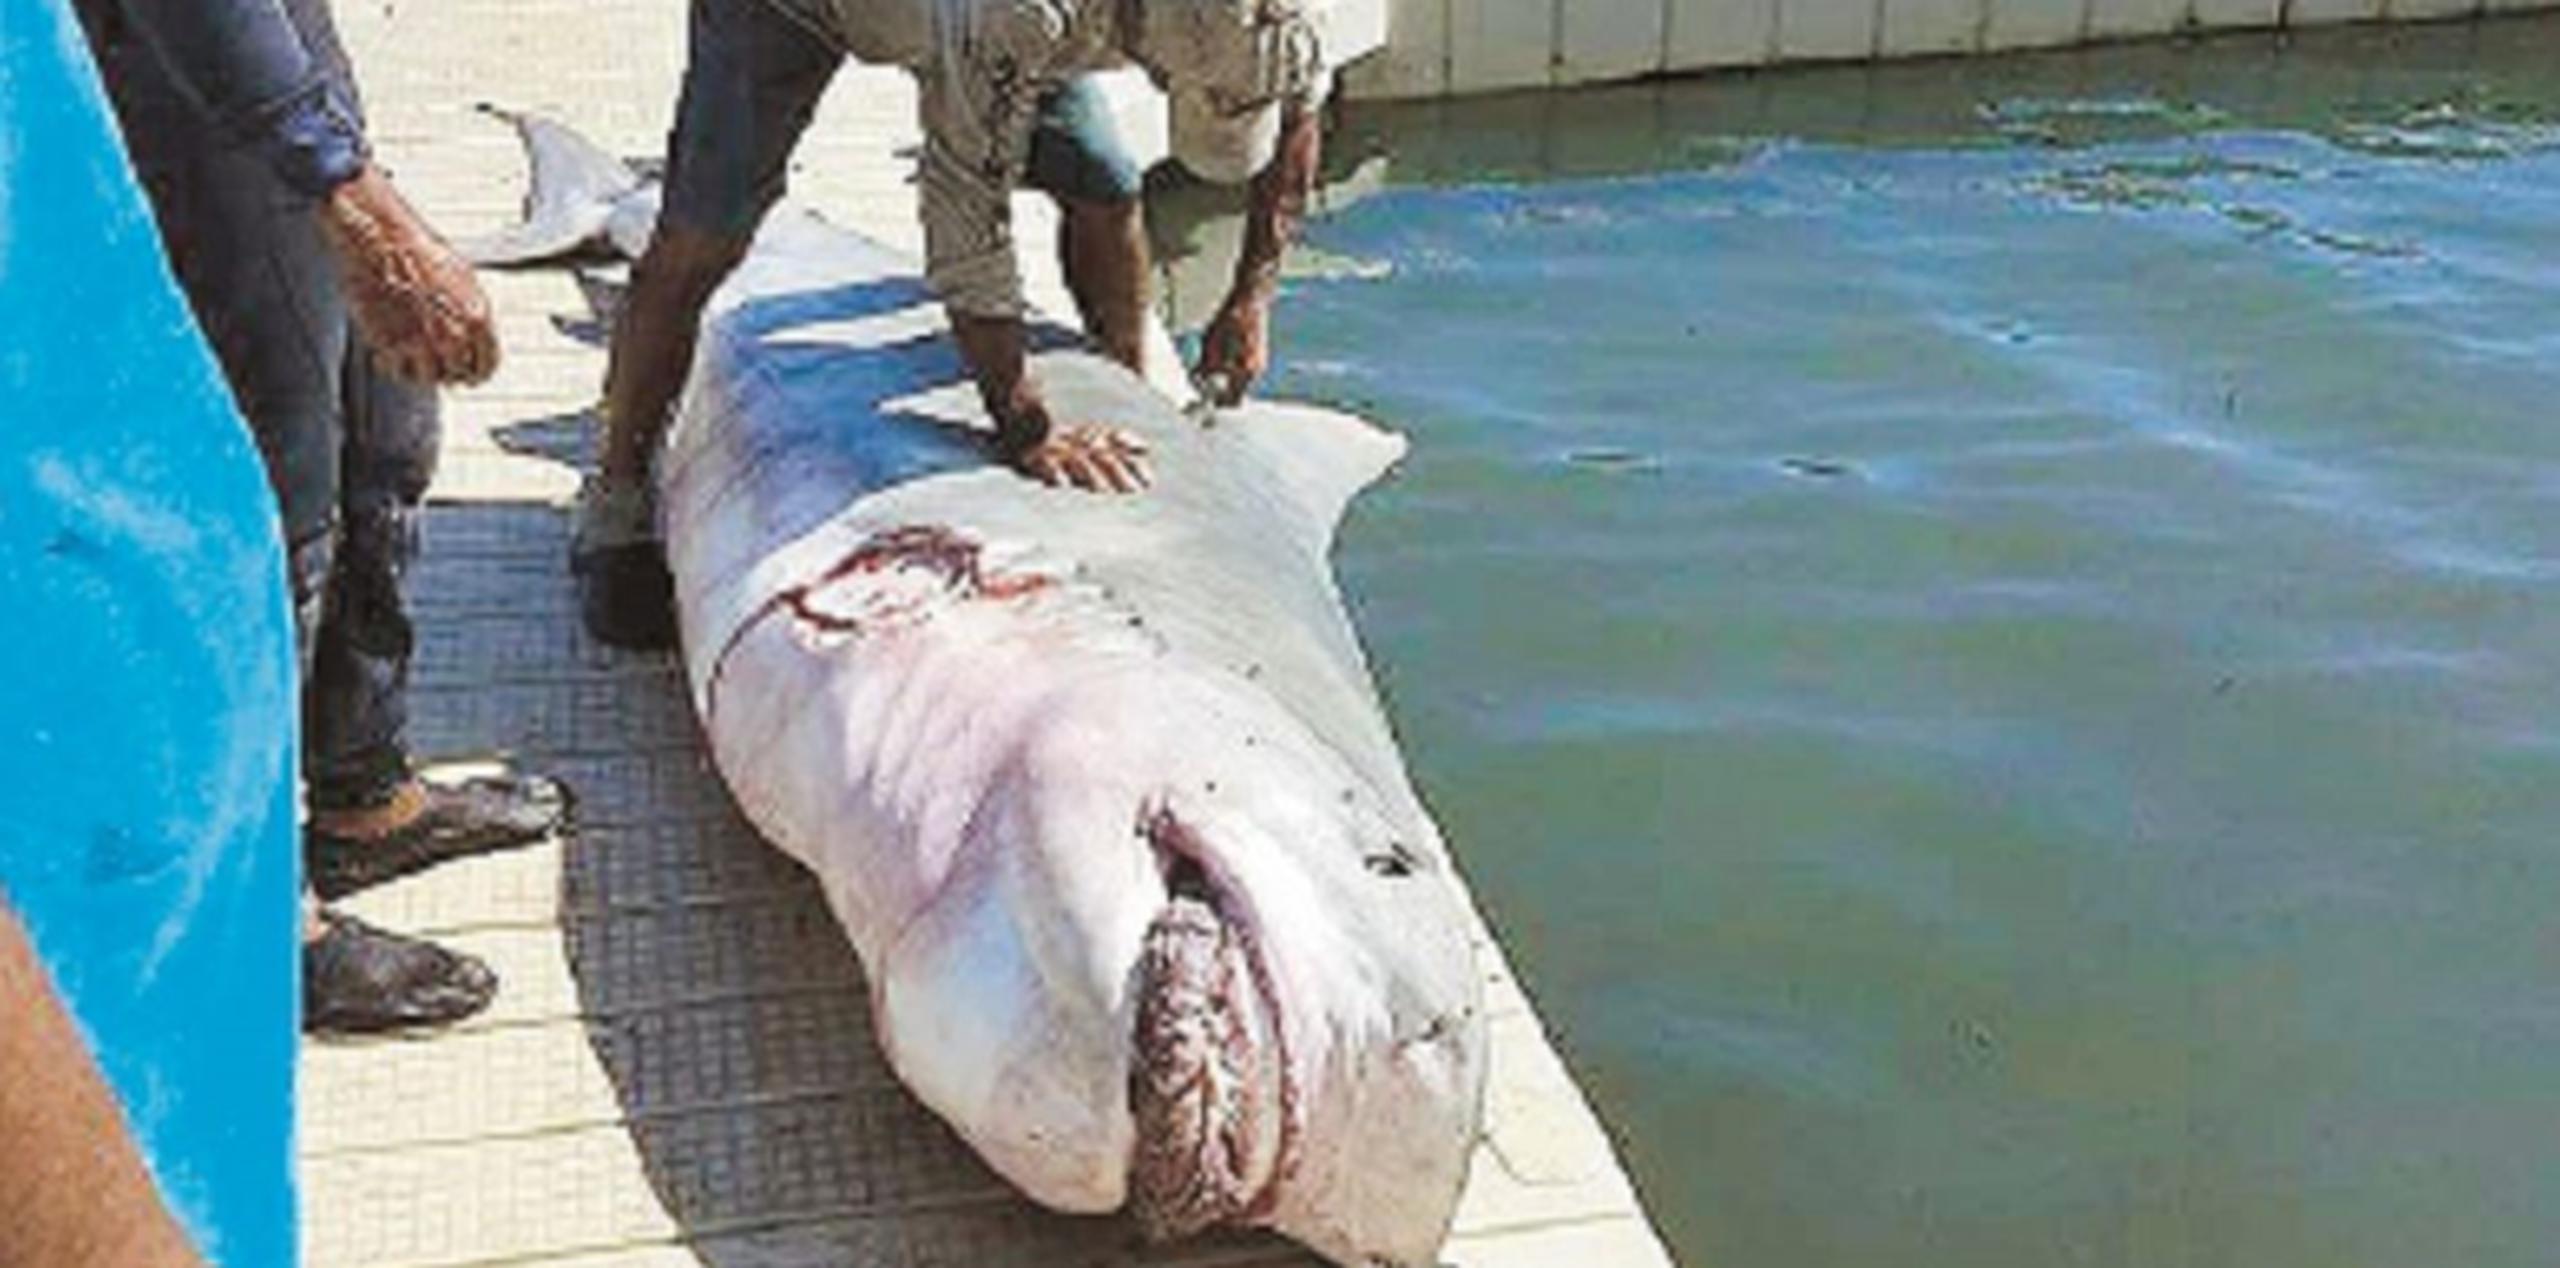 Al pescador Pedro Correa, no le sorprende haber atrapado entre sus redes a un tiburón Tigre hembra de 13 pies de largo y sobre 500 libras de peso. (Suministrada)